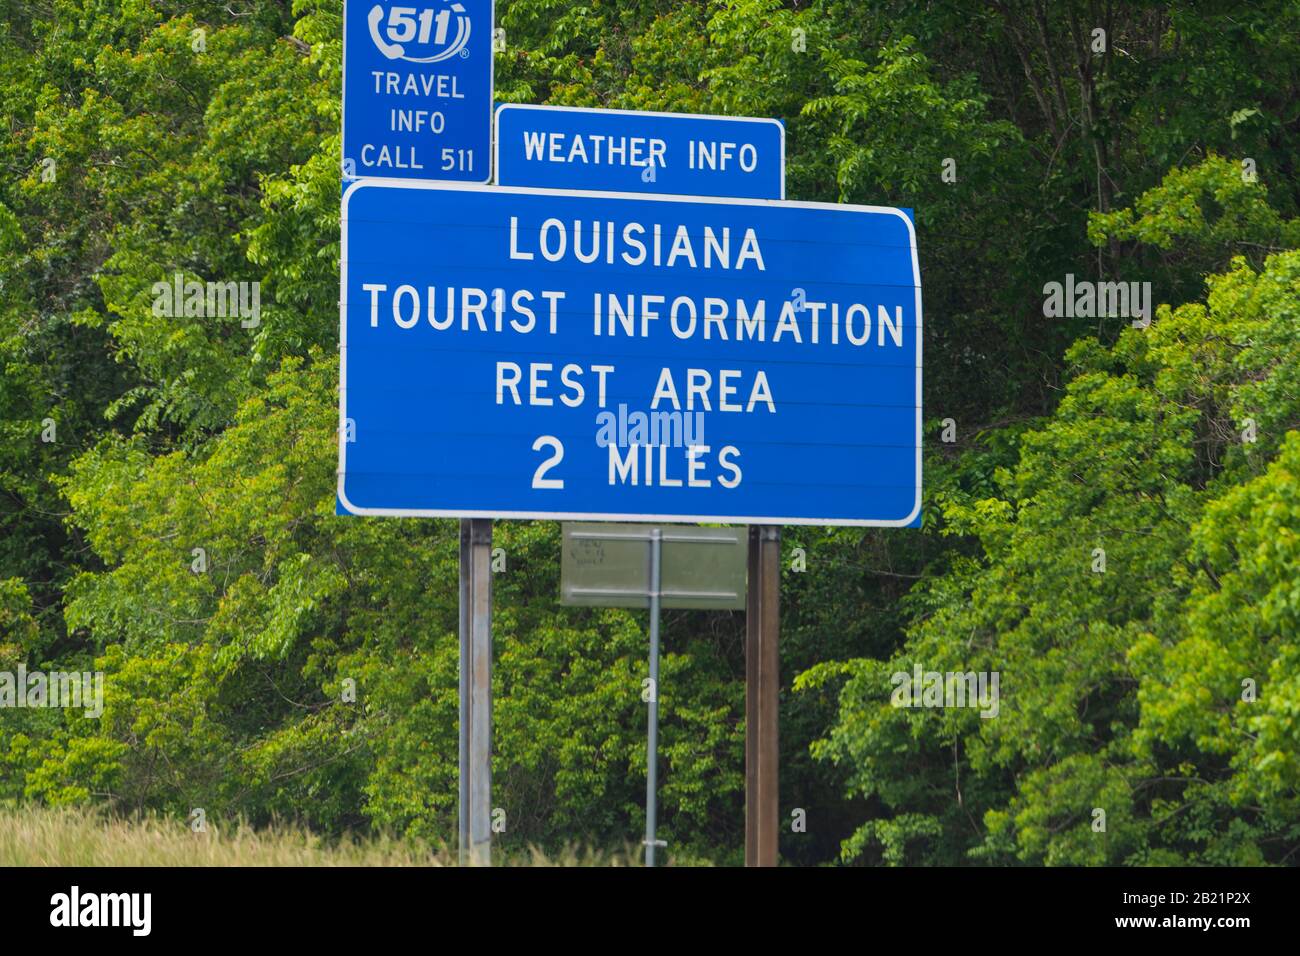 Slidell, États-Unis - 22 avril 2018: Highway Road Street avec clôture de bienvenue à Louisiane signer et texte sur l'interstate 10 Banque D'Images